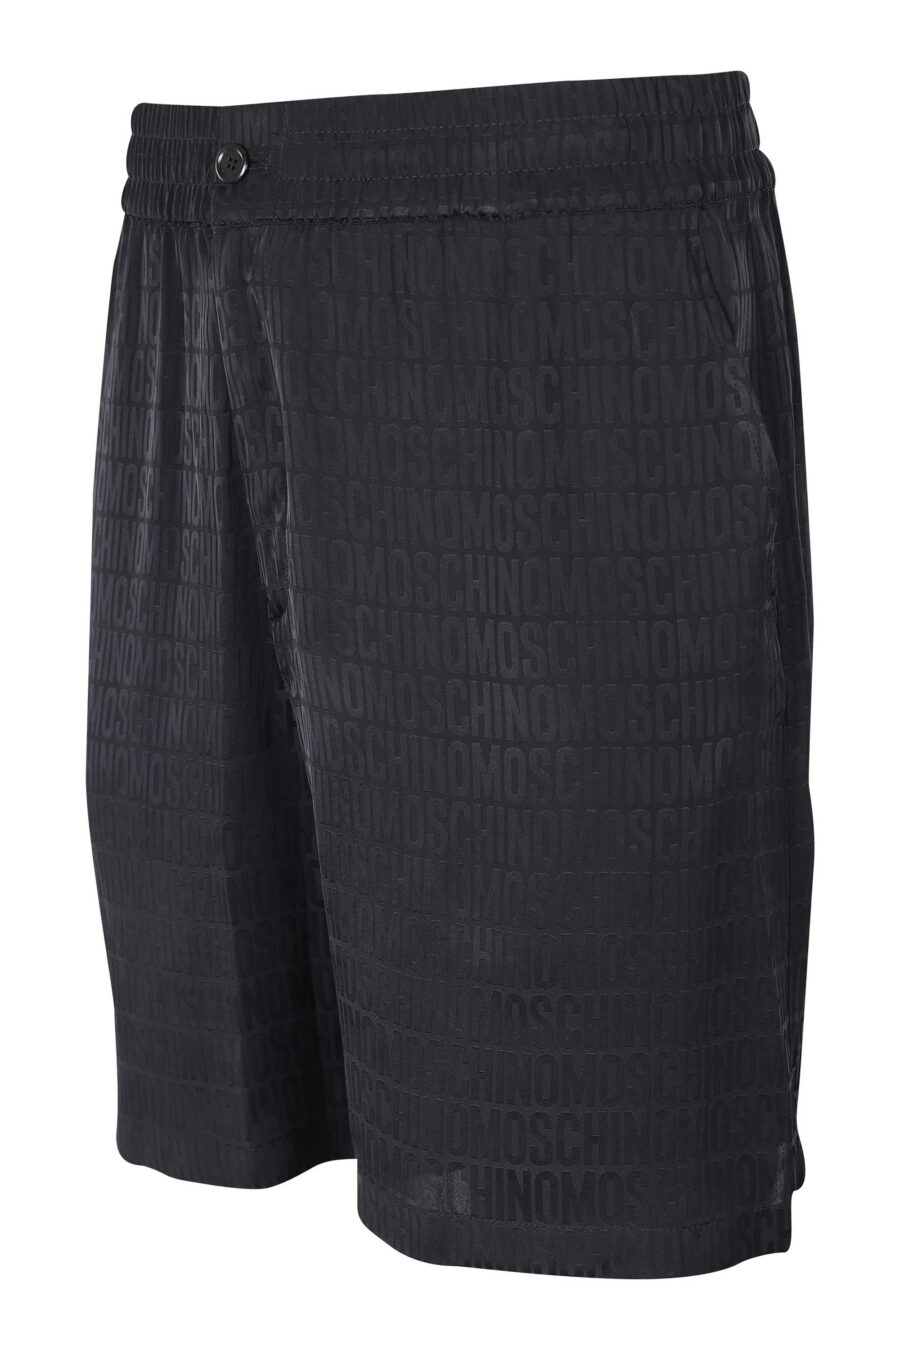 Pantalón corto negro "all over logo" monocromático - IMG 9600